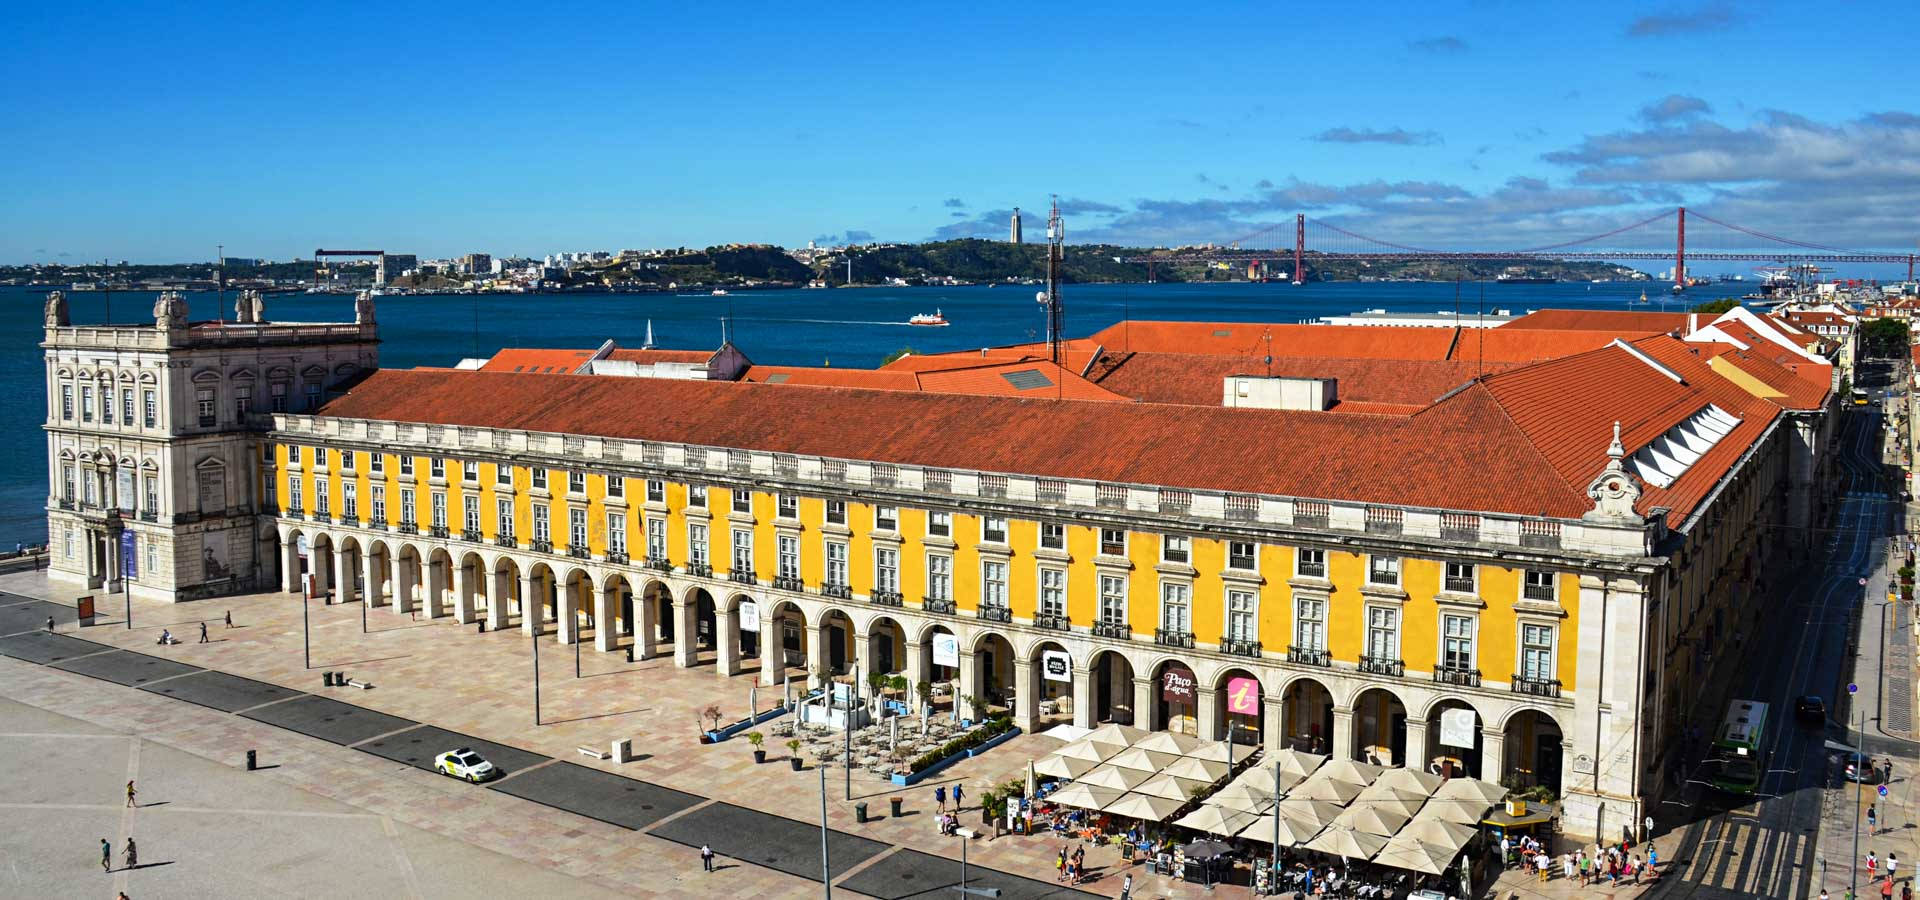 Lissabon,praça Do Comércio, Warme Farben. Wallpaper